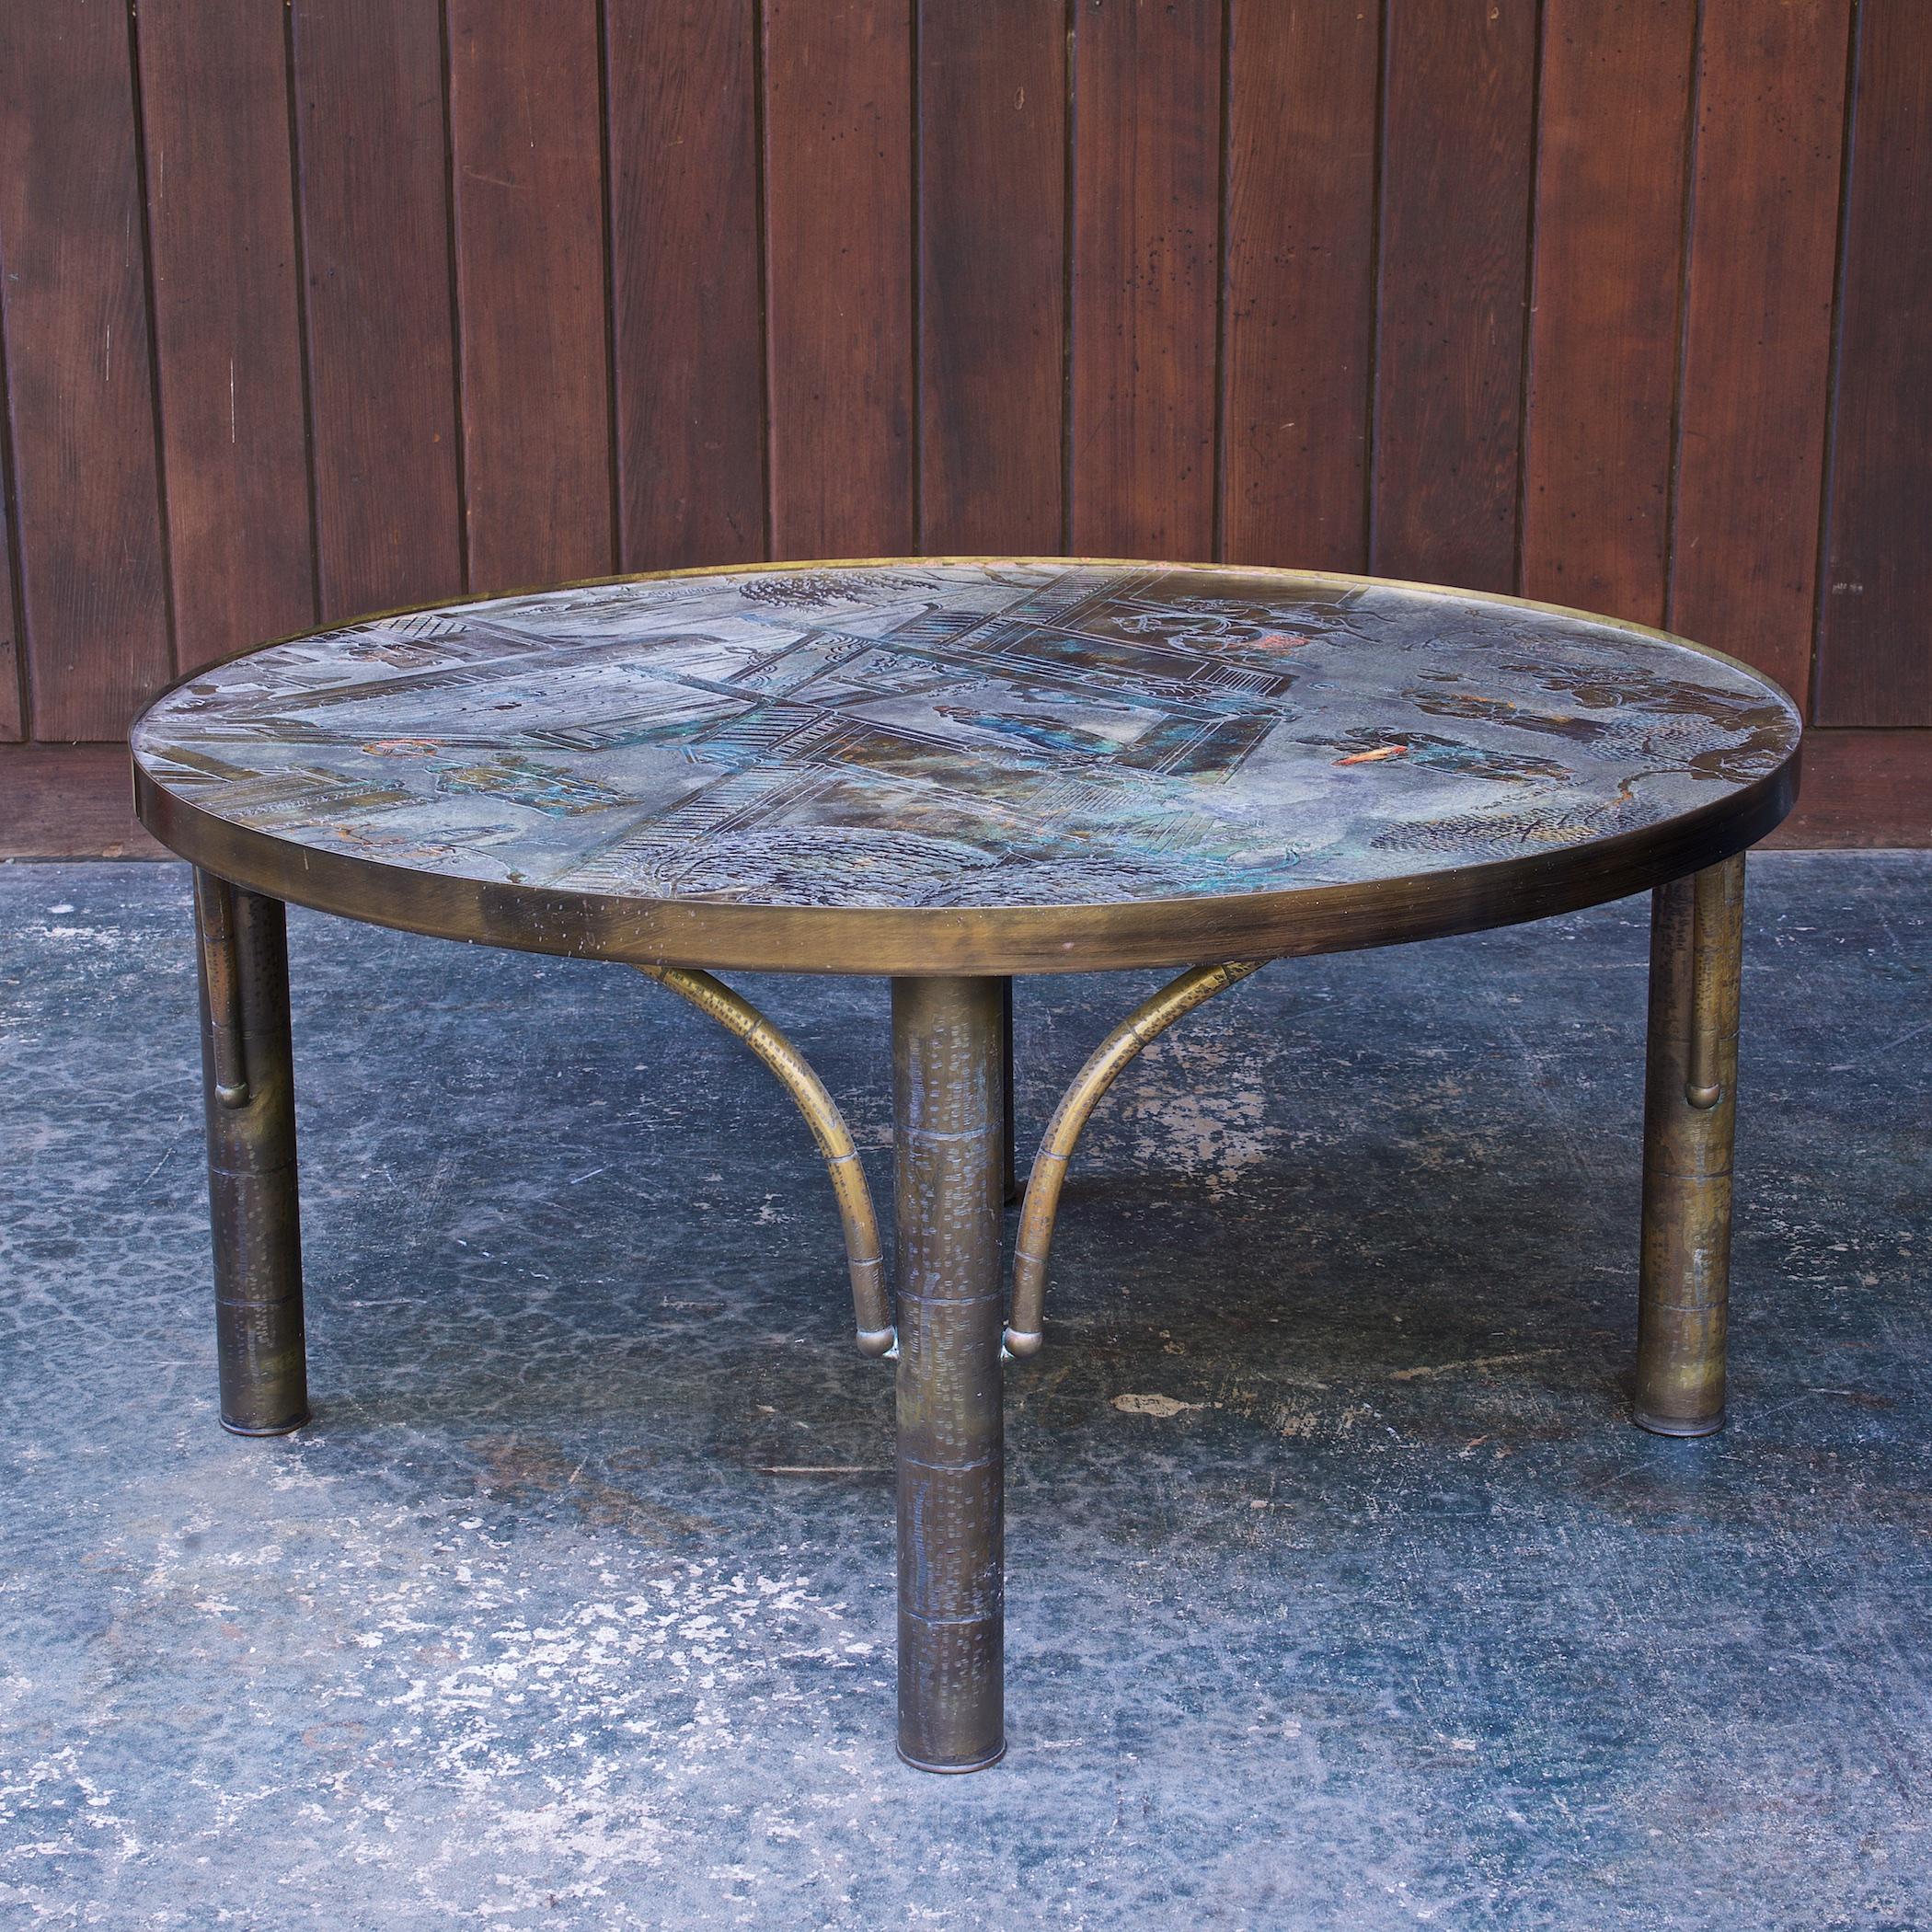 Merveilleuse table basse LaVerne Bronze de 3 pieds avec quatre pieds en faux bambou.  Une merveilleuse surface texturée en bronze qui capte la lumière, change dans toutes les lumières, avec une signature gravée sur le dessus : Philips Kelvin LaVerne.